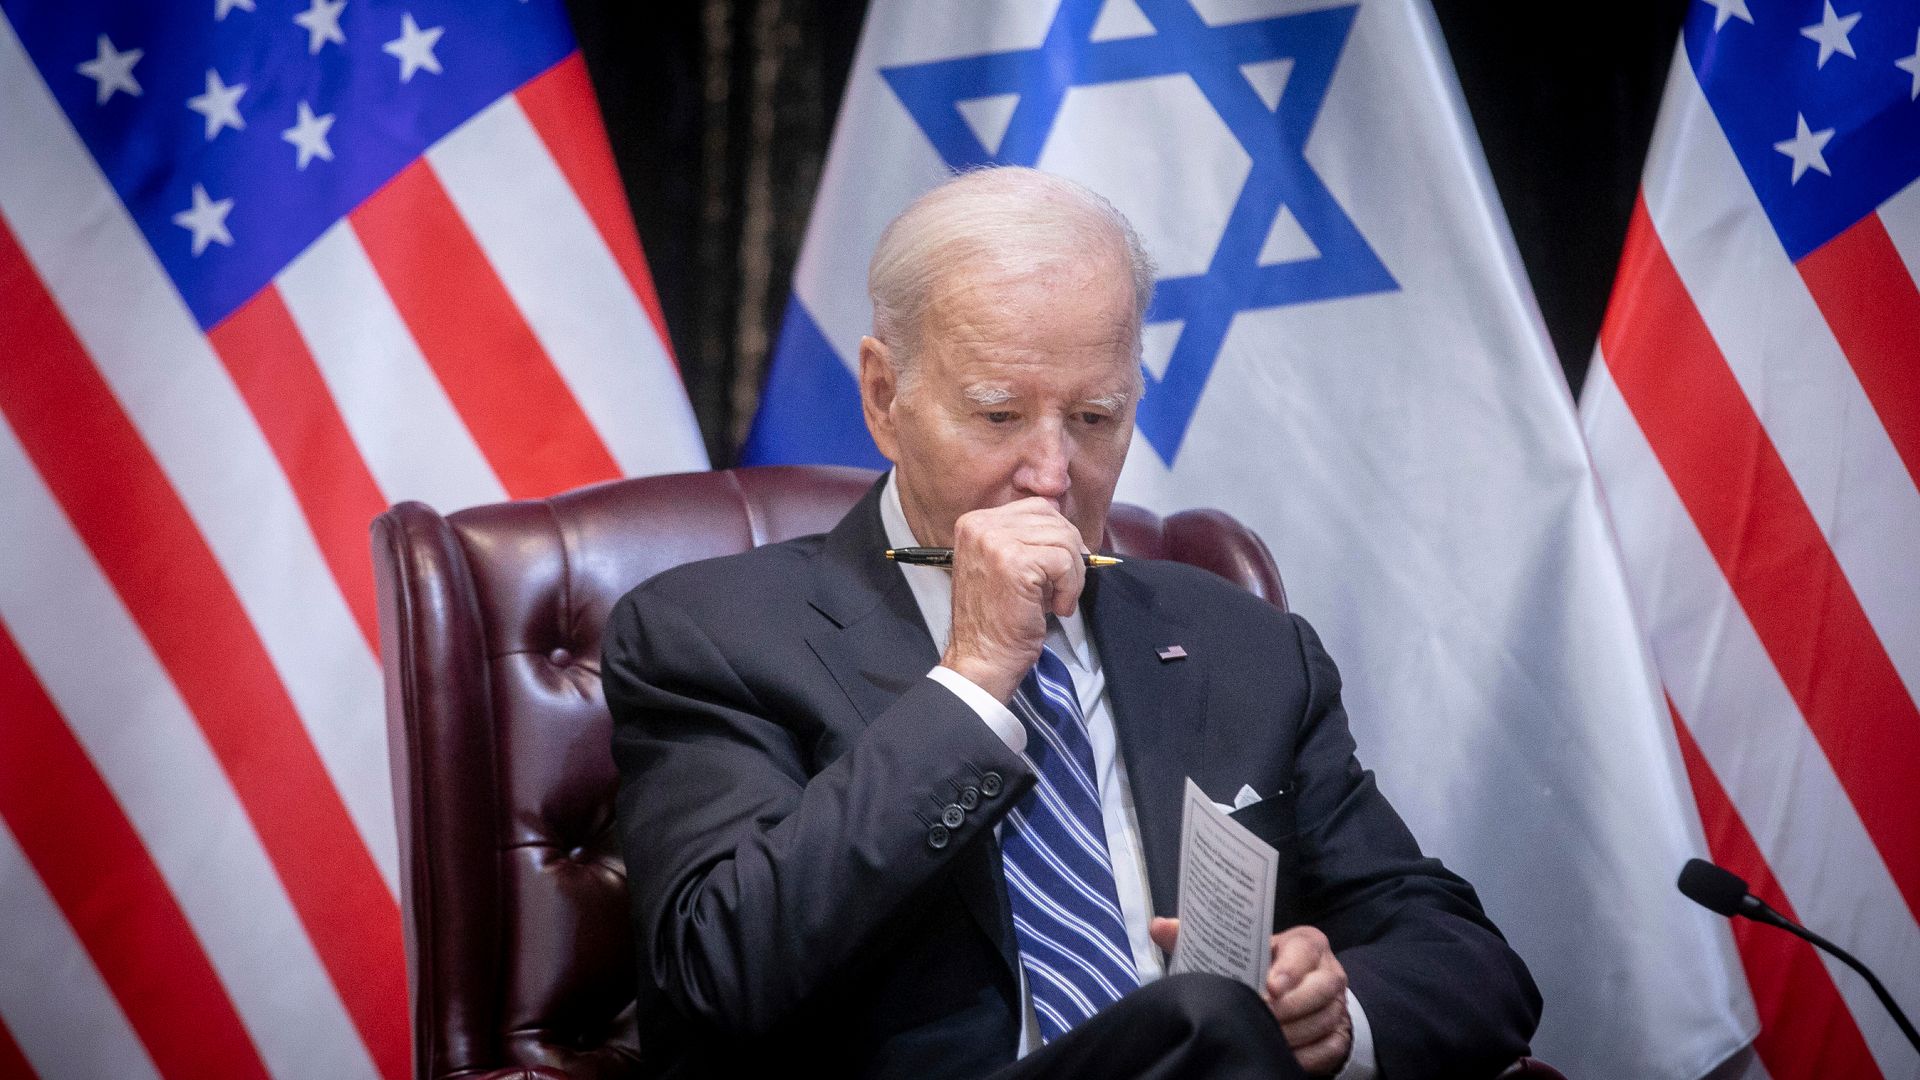 angriff des iran auf israel: biden will g7-treffen einberufen und antwort auf »dreisten« angriff koordinieren